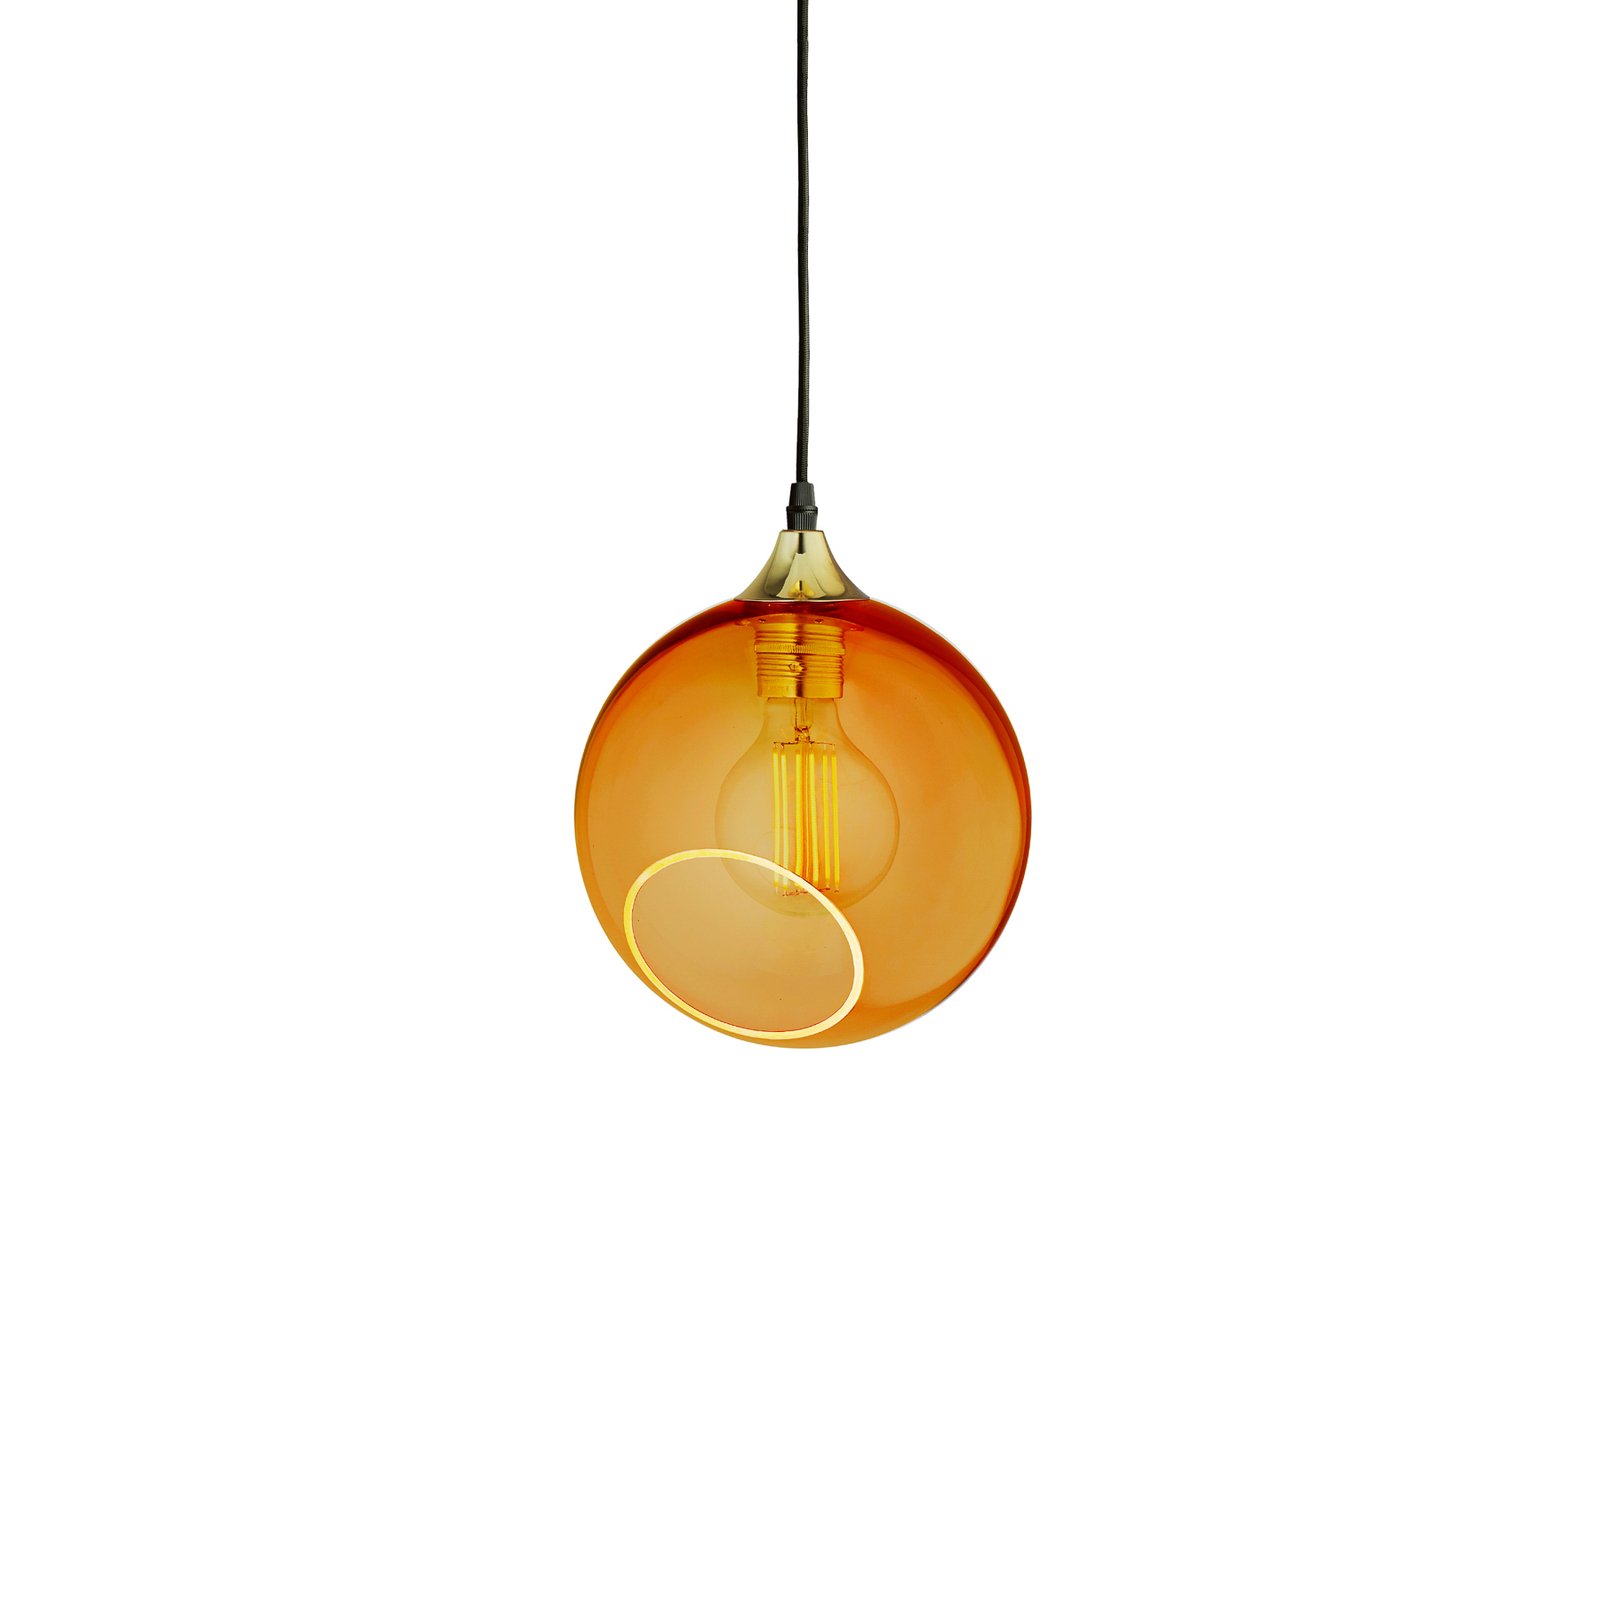 Ballroom pendant light, amber-coloured